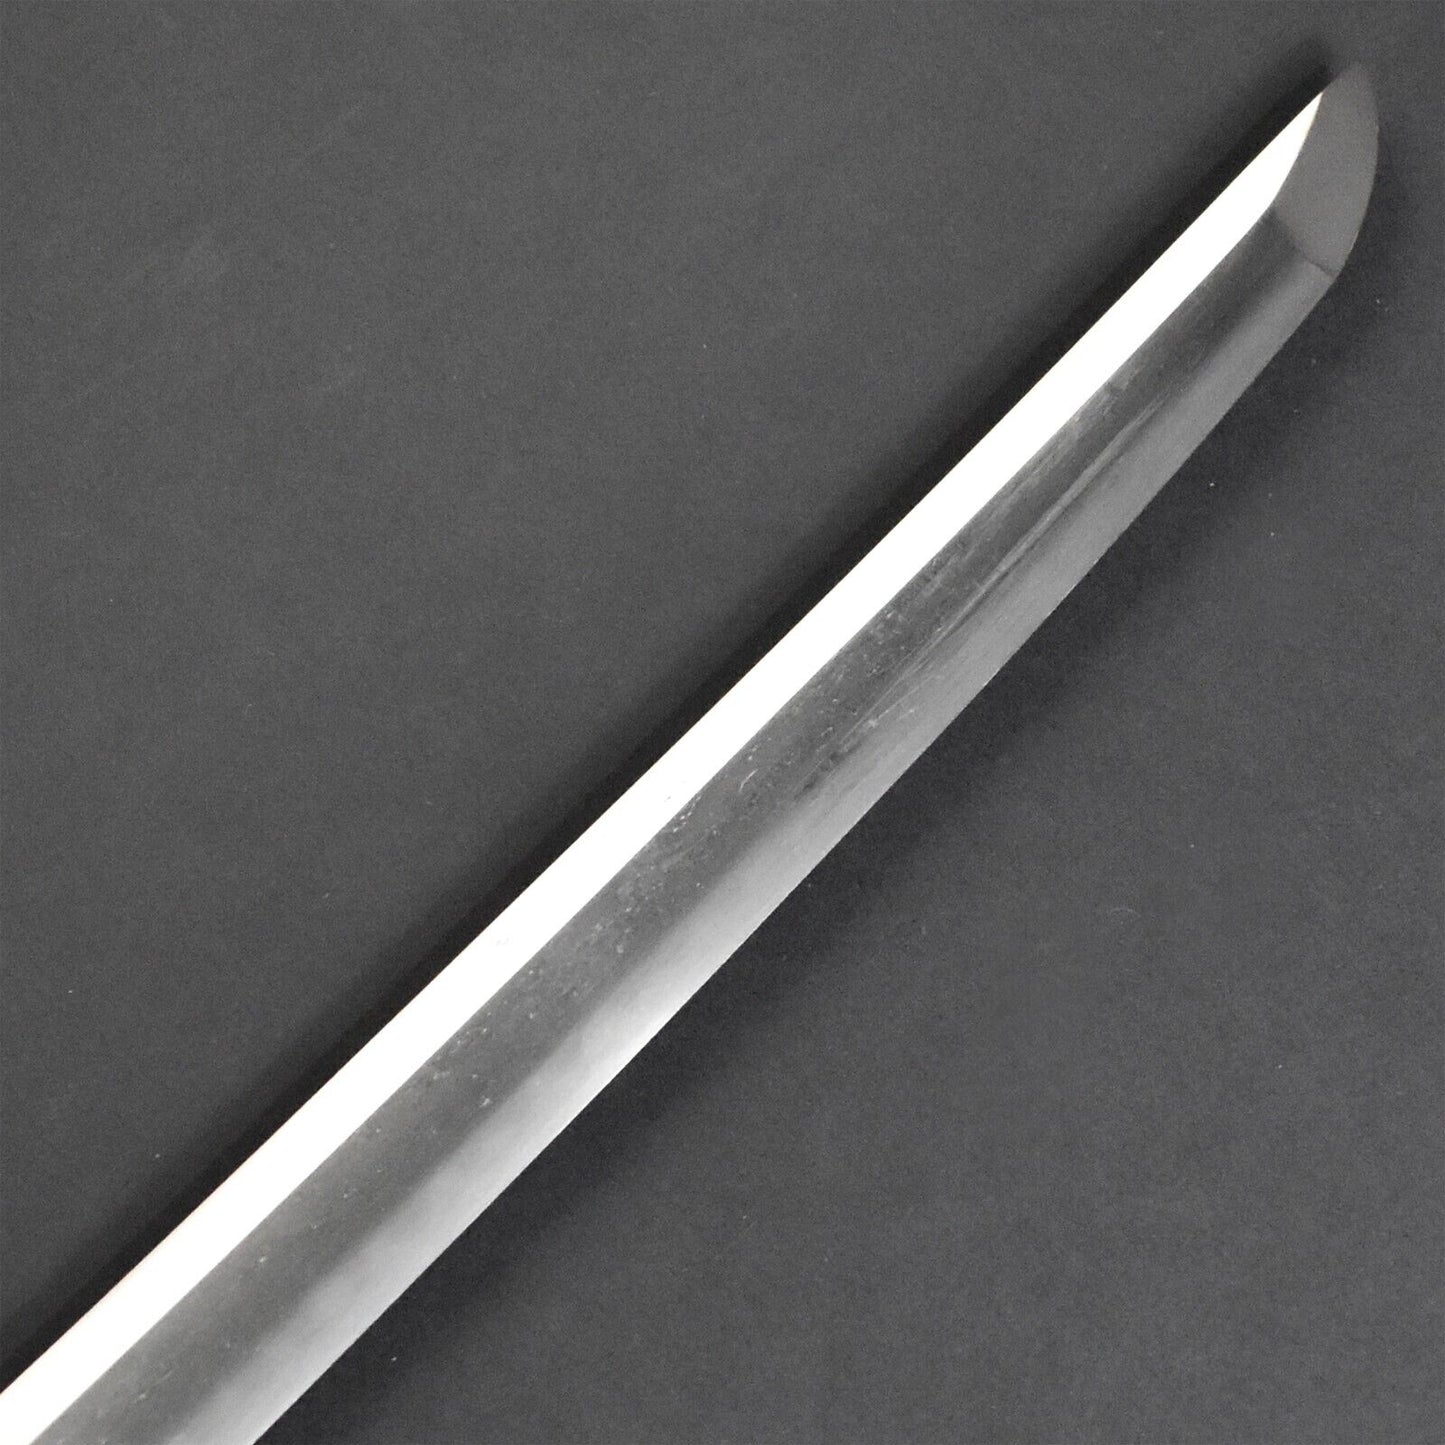 Collectible Samurai Long Sword Nihonto Weapon Katana Edo Era Blade Antique Original.